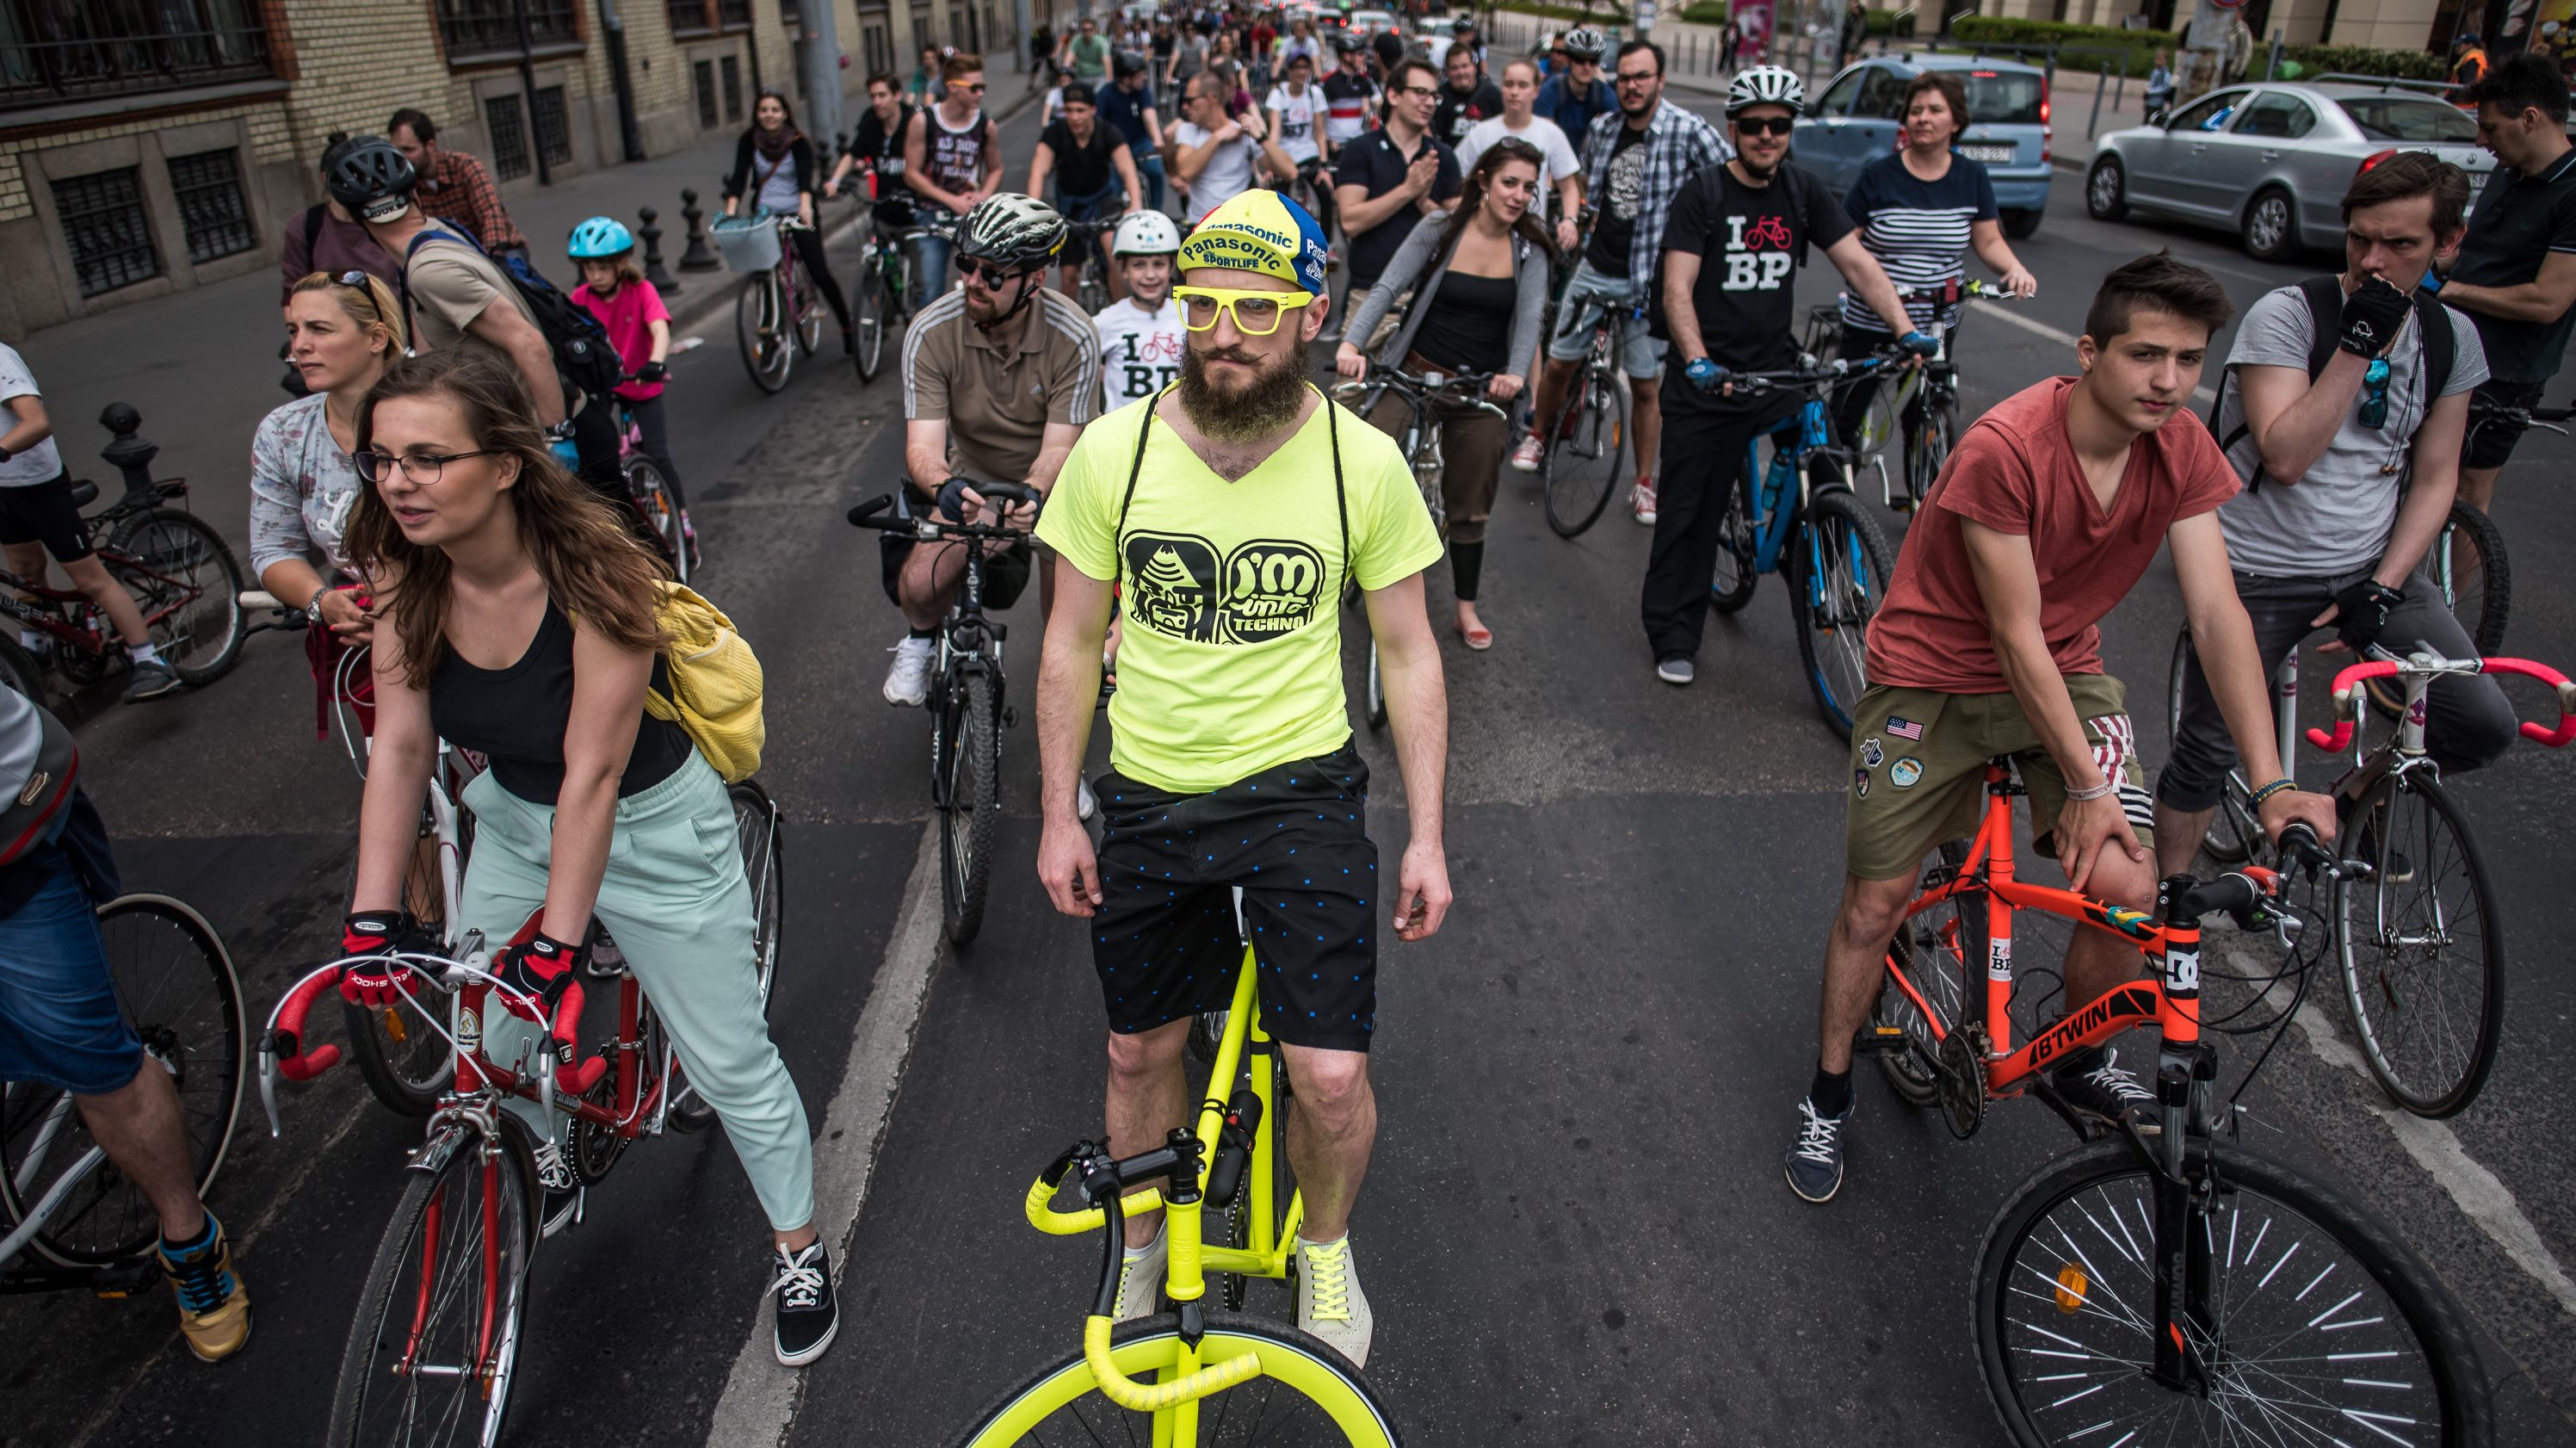 Biciklis felvonulás miatt forgalomkorlátozás lesz szombaton Budapesten